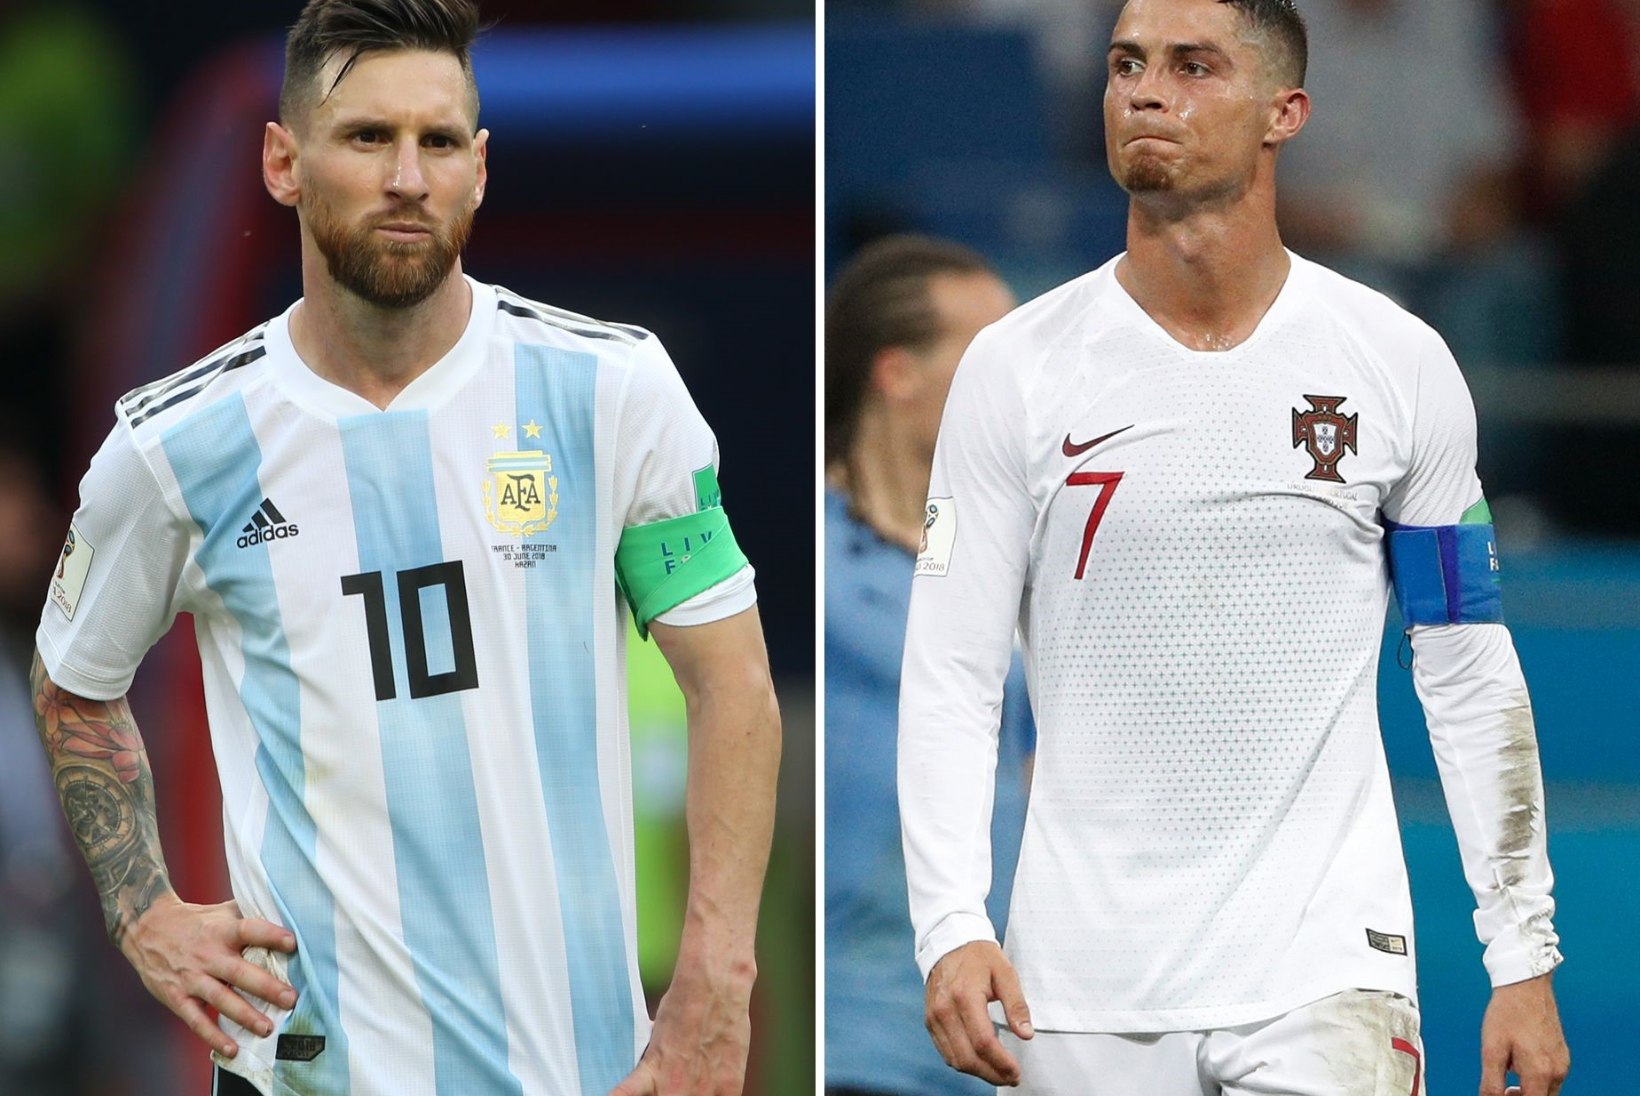 Ajaloo vingeim rivaliteet? Ronaldo ja Messi lükkavad teineteist üha ulmelisematesse kõrgustesse